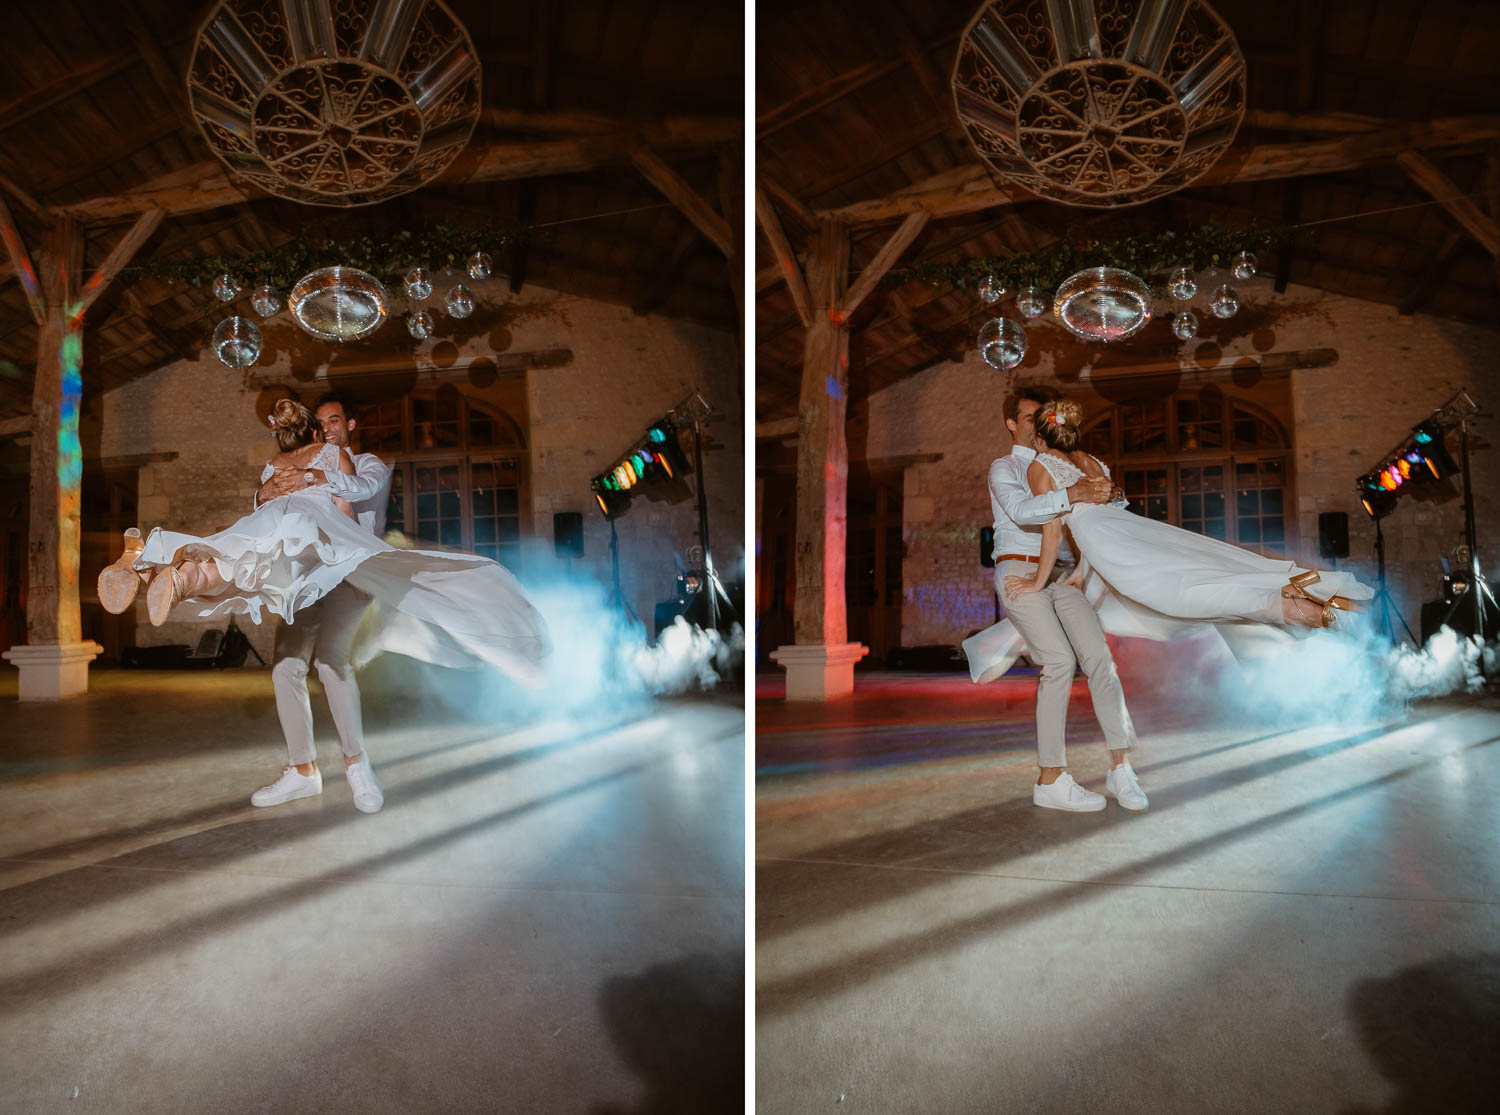 Première danse et ouverture de bal par les jeunes mariés au Château de Théon en Charente Maritime